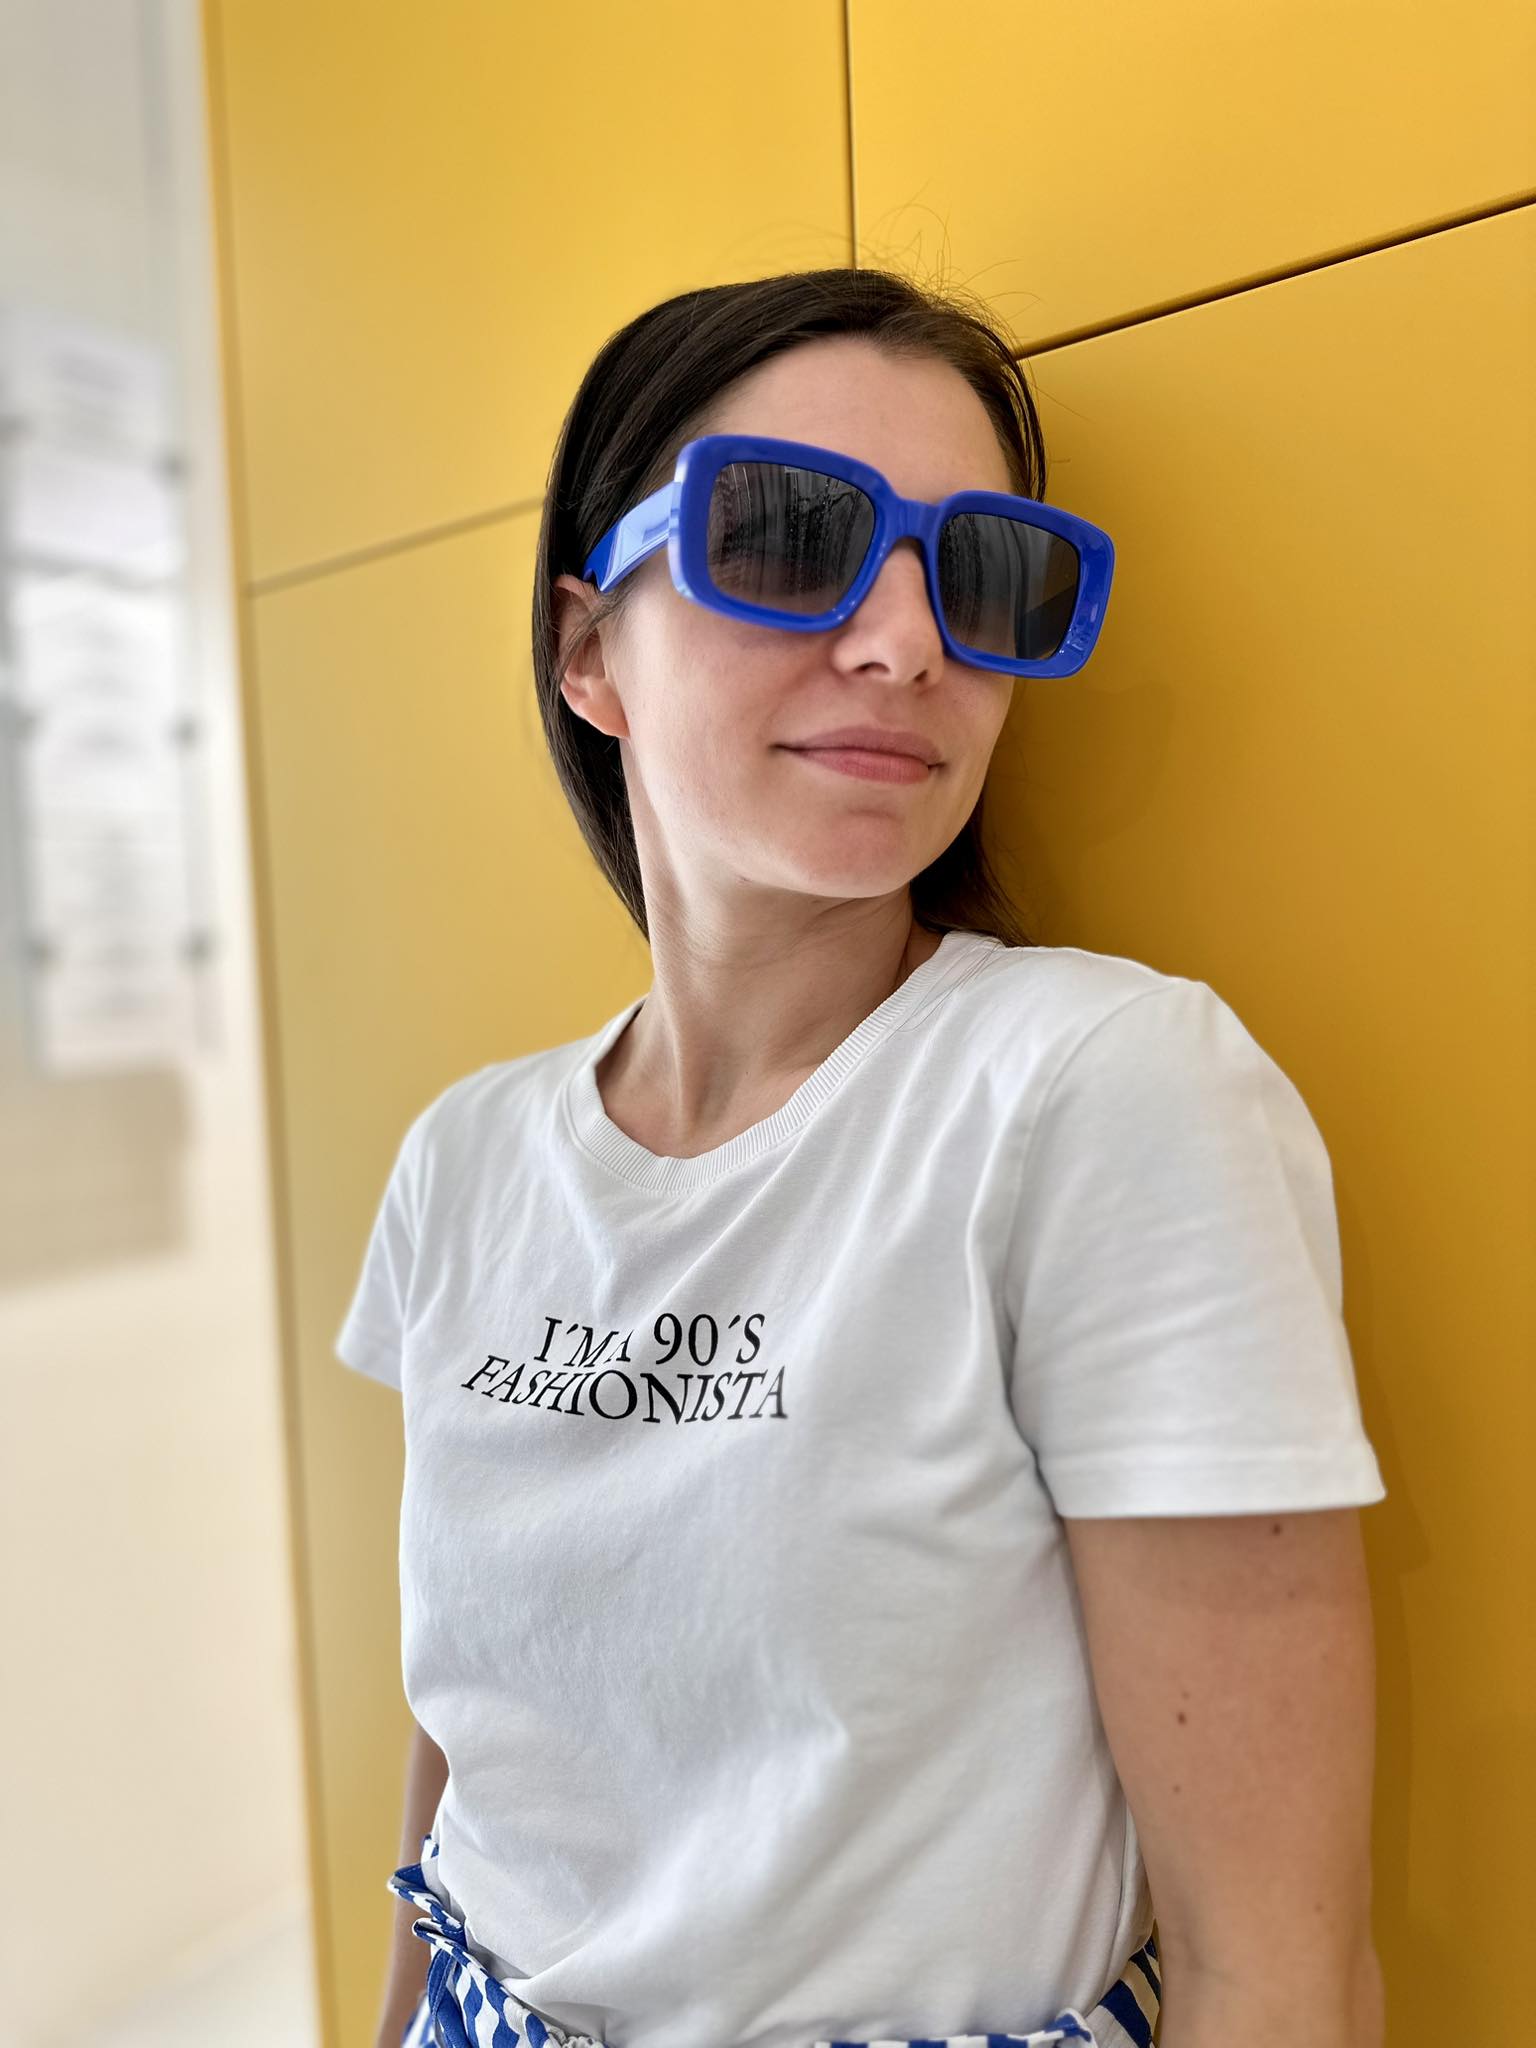 U novoj optici Ghetaldus Rijeka pronašli smo savršene naočale za ljeto!